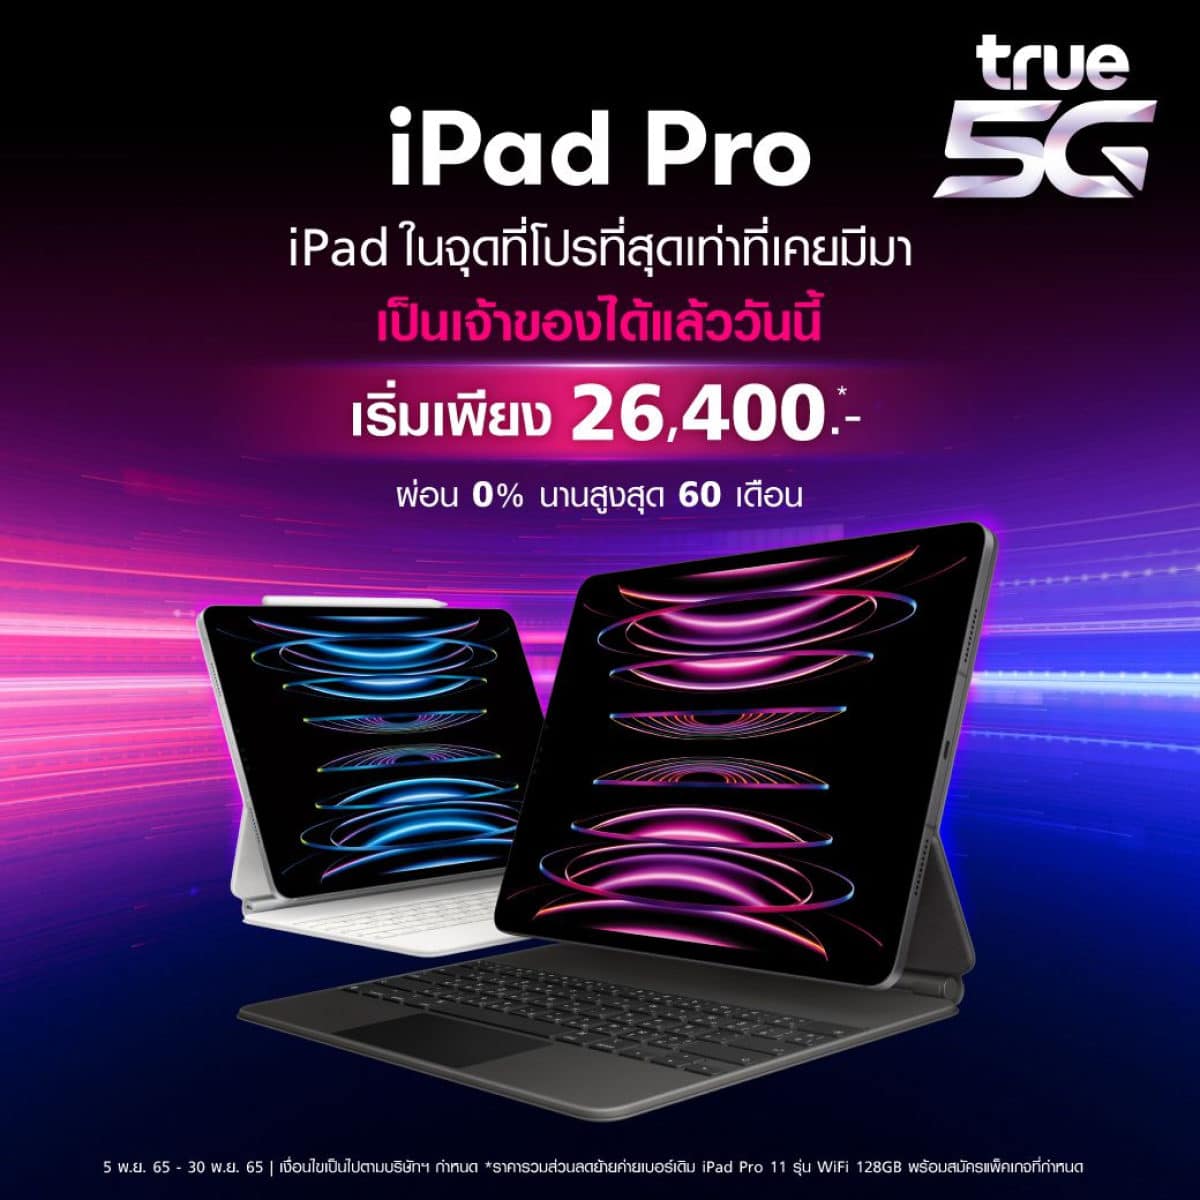 True-5g-จำหน่าย-iPad-Pro-iPad-รุ่นใหม่